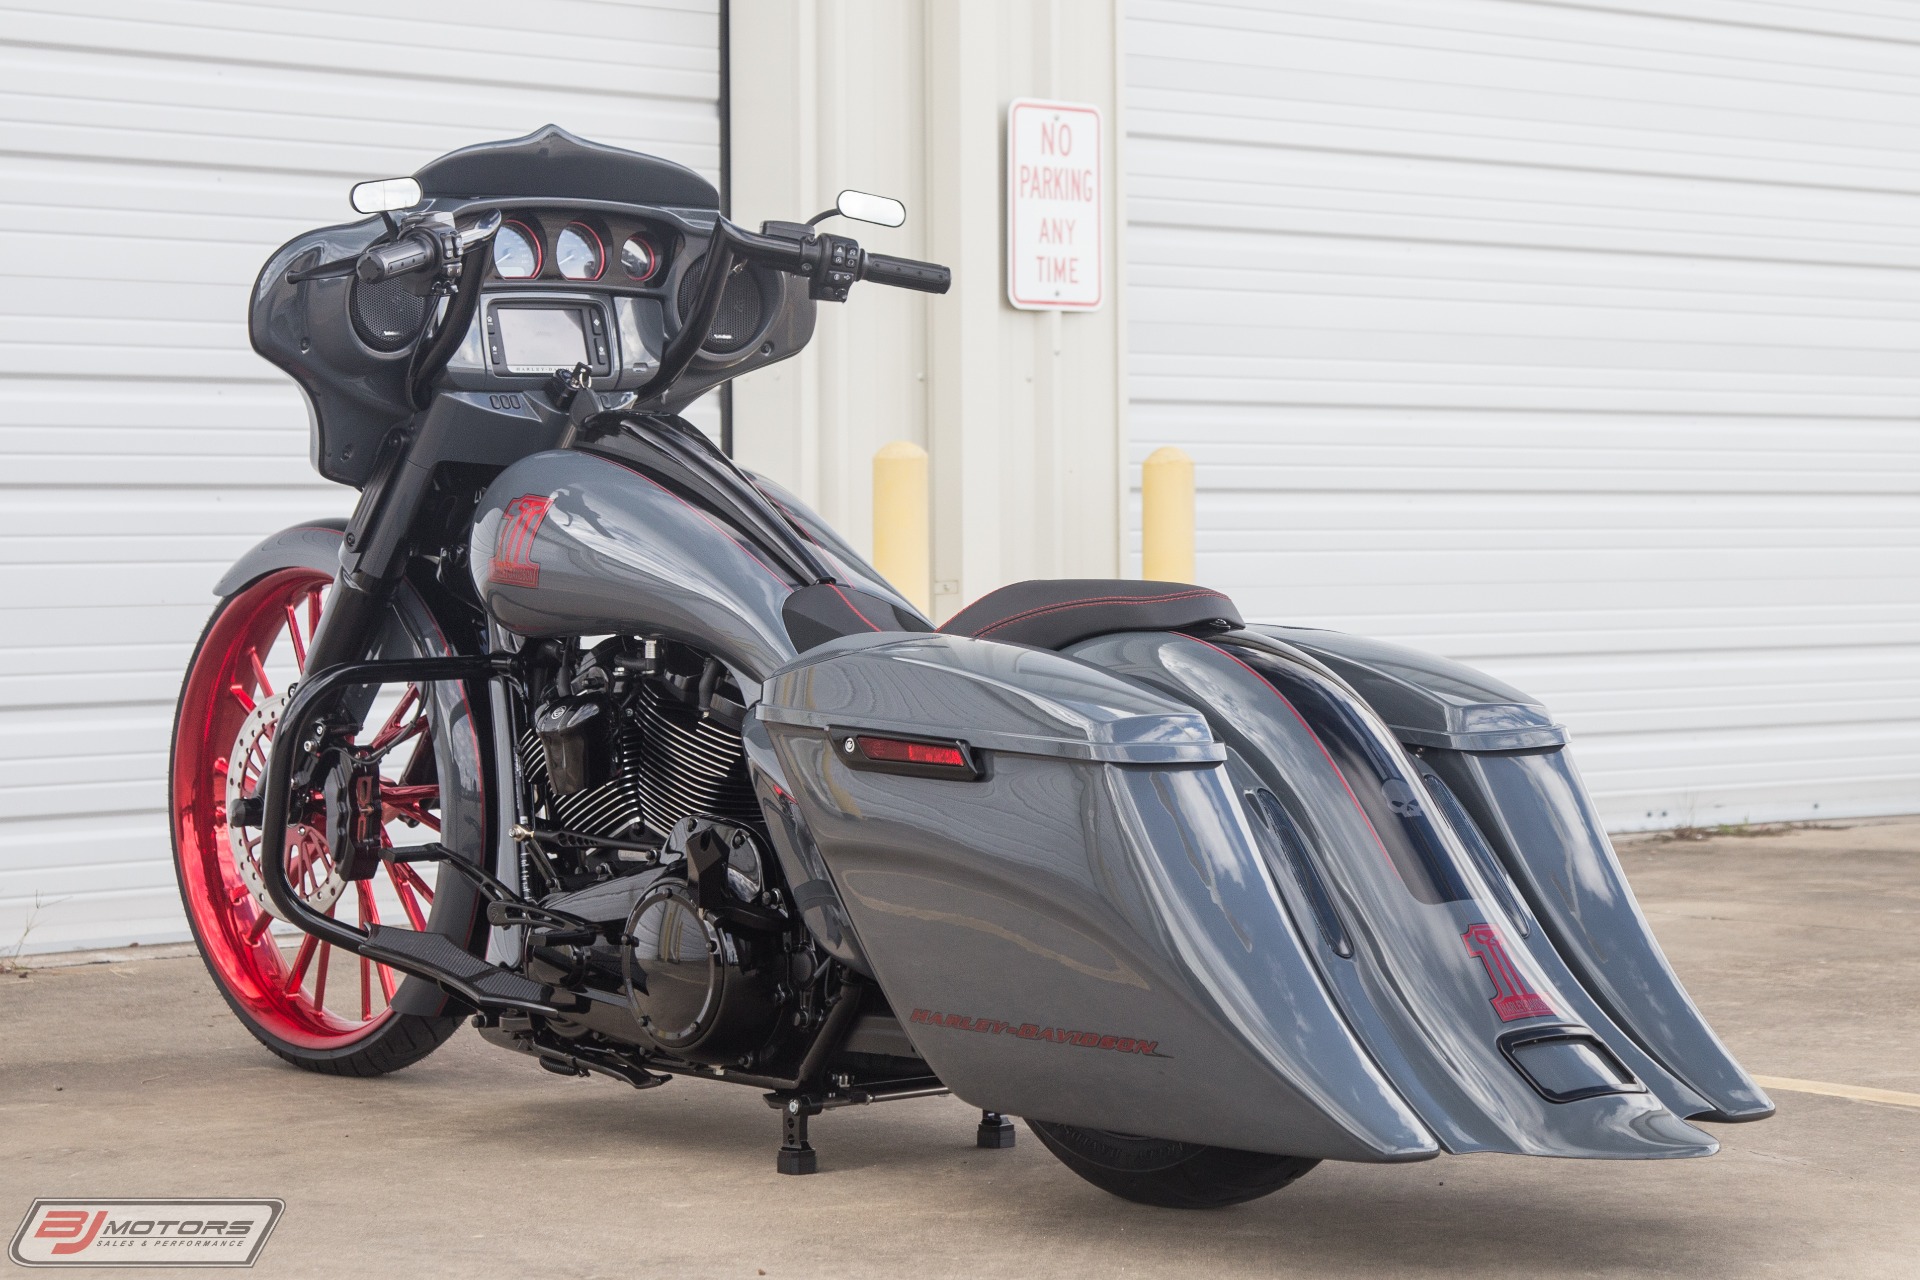 Used 2018 Harley Davidson Street Glide Custom Bagger For Sale Special Pricing Bj Motors Stock Jb658237